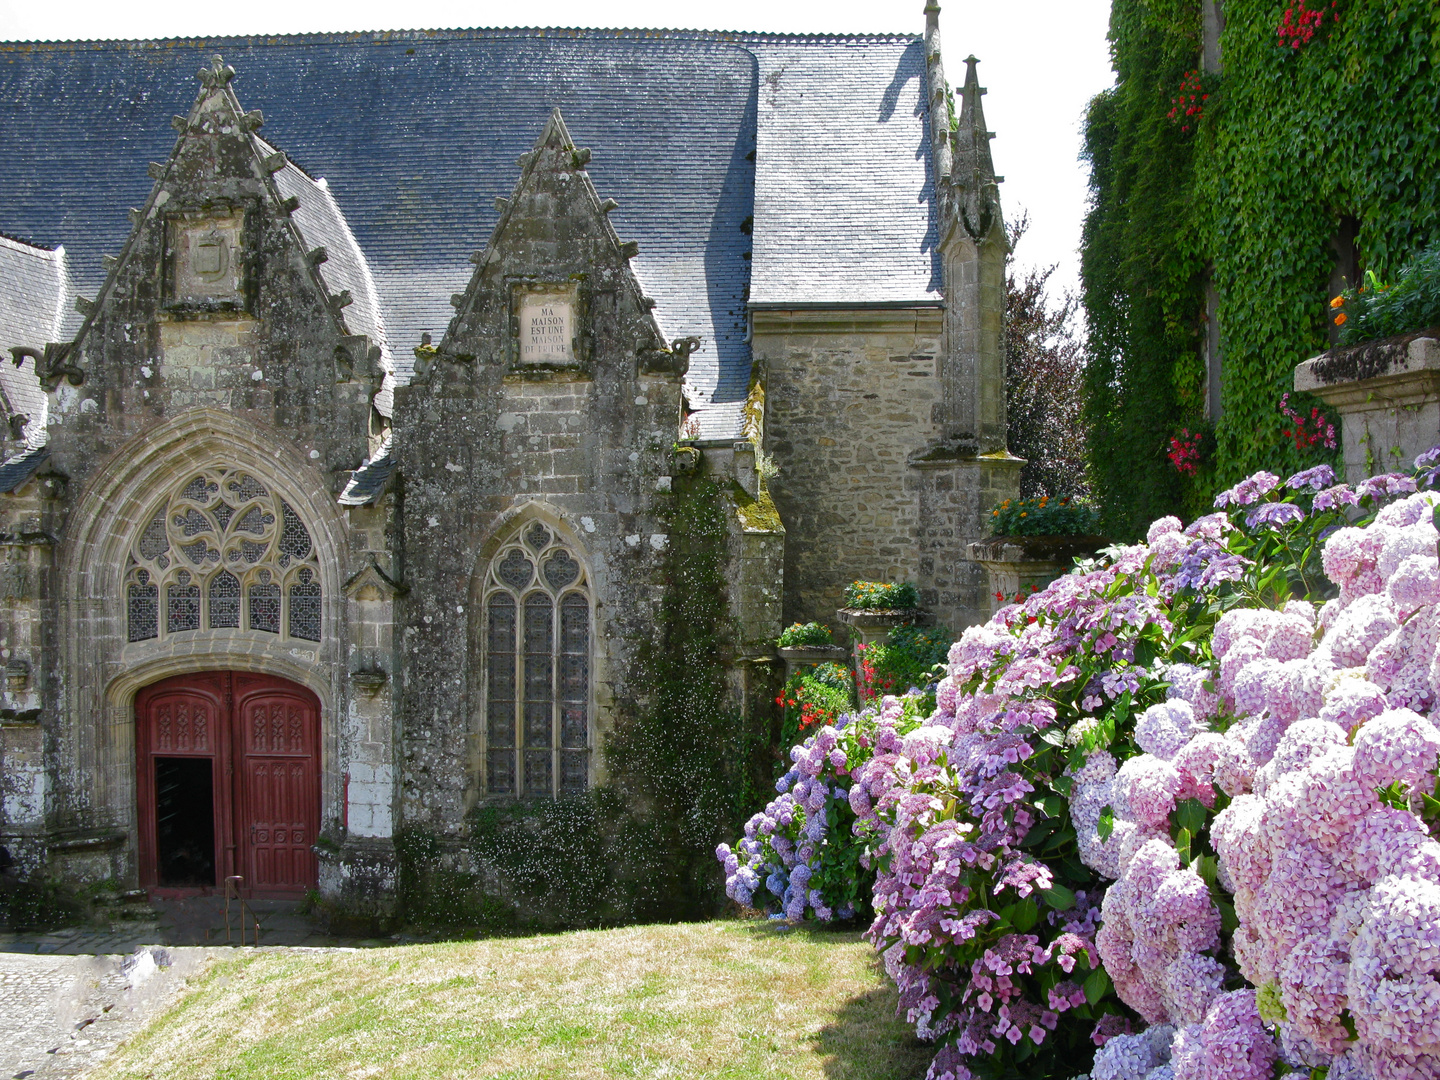 Rochefort-en-Terre (1), Bretagne